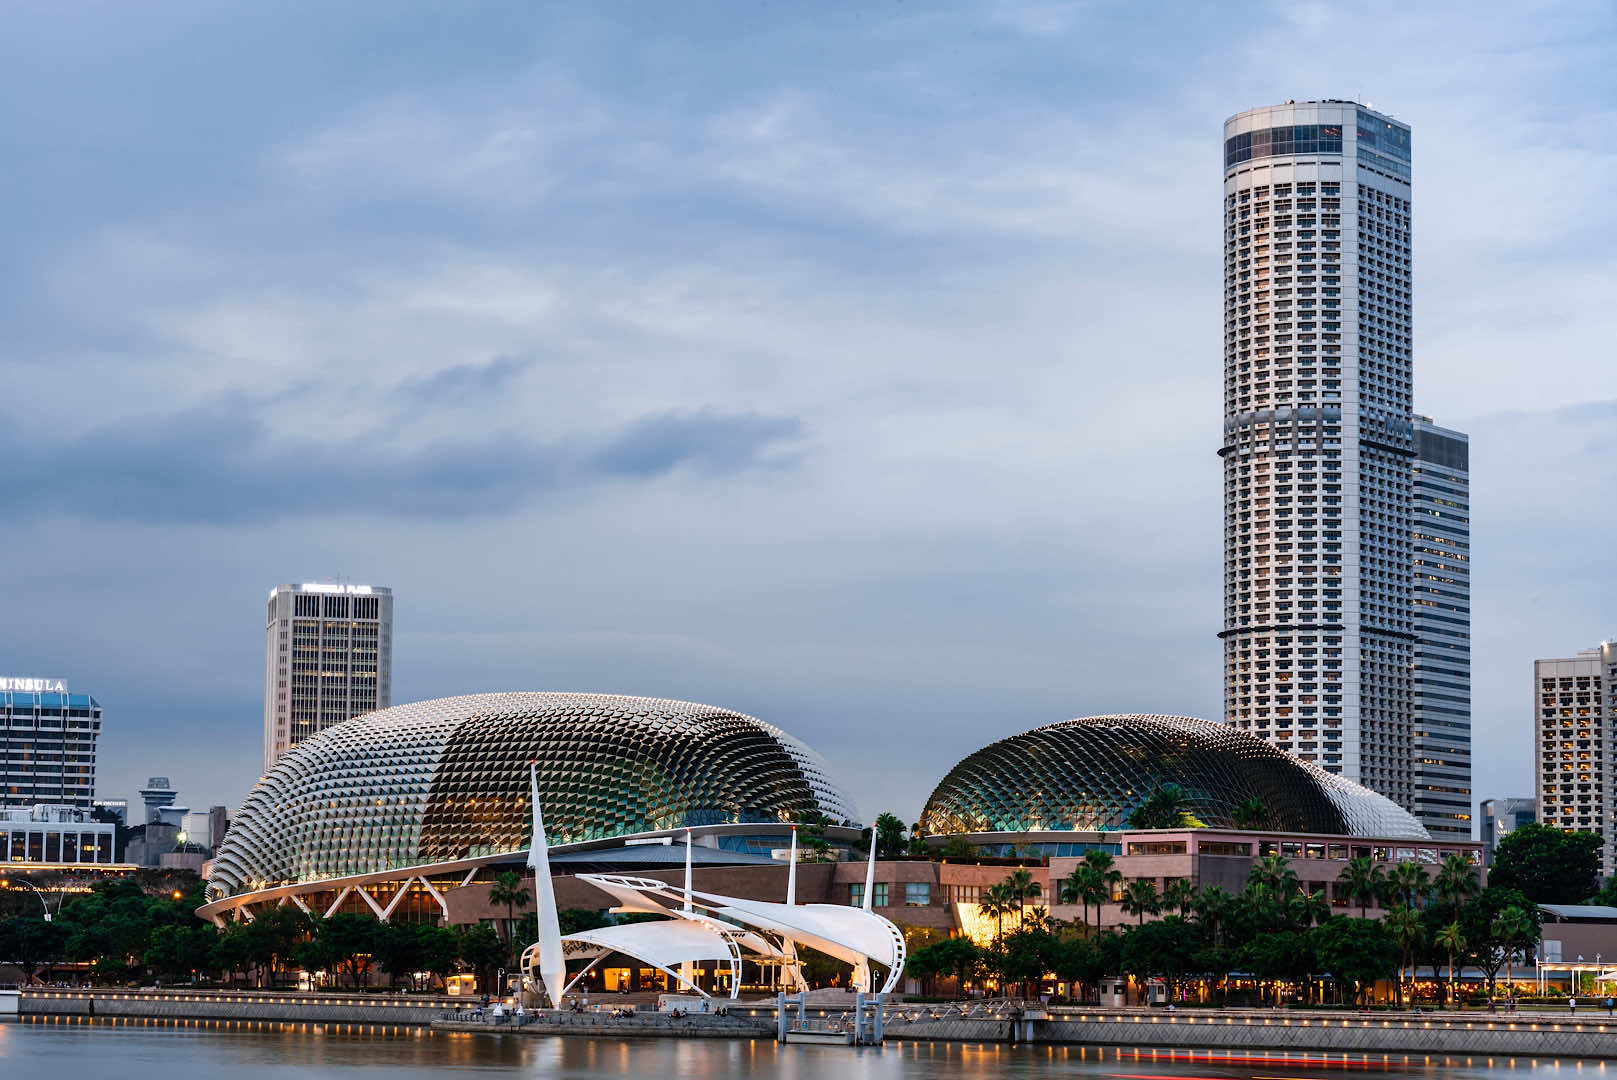 Singapore Property Market